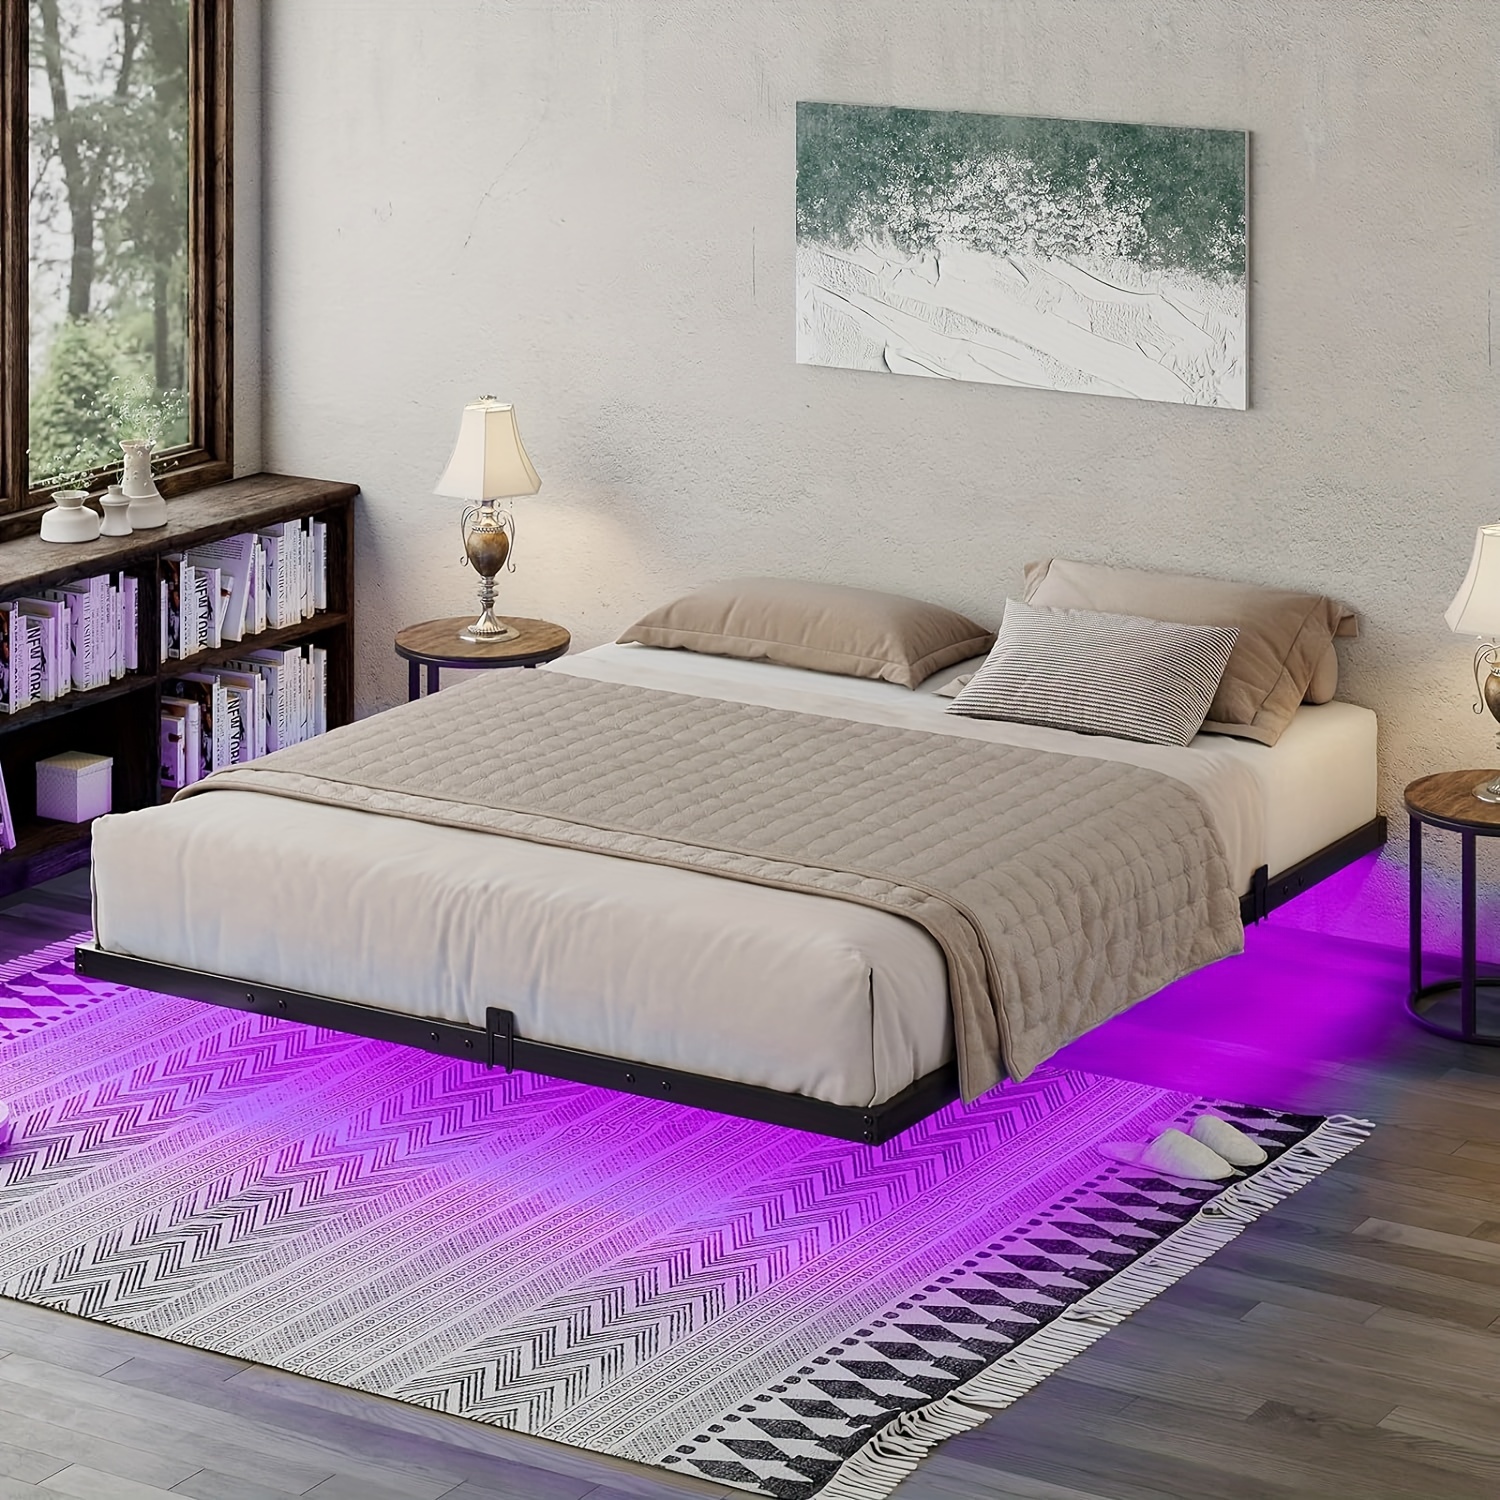 

Floating Platform Bed Frame With Rgbw Led Light, Modern Metal Platform Bed With Steel Slat Support